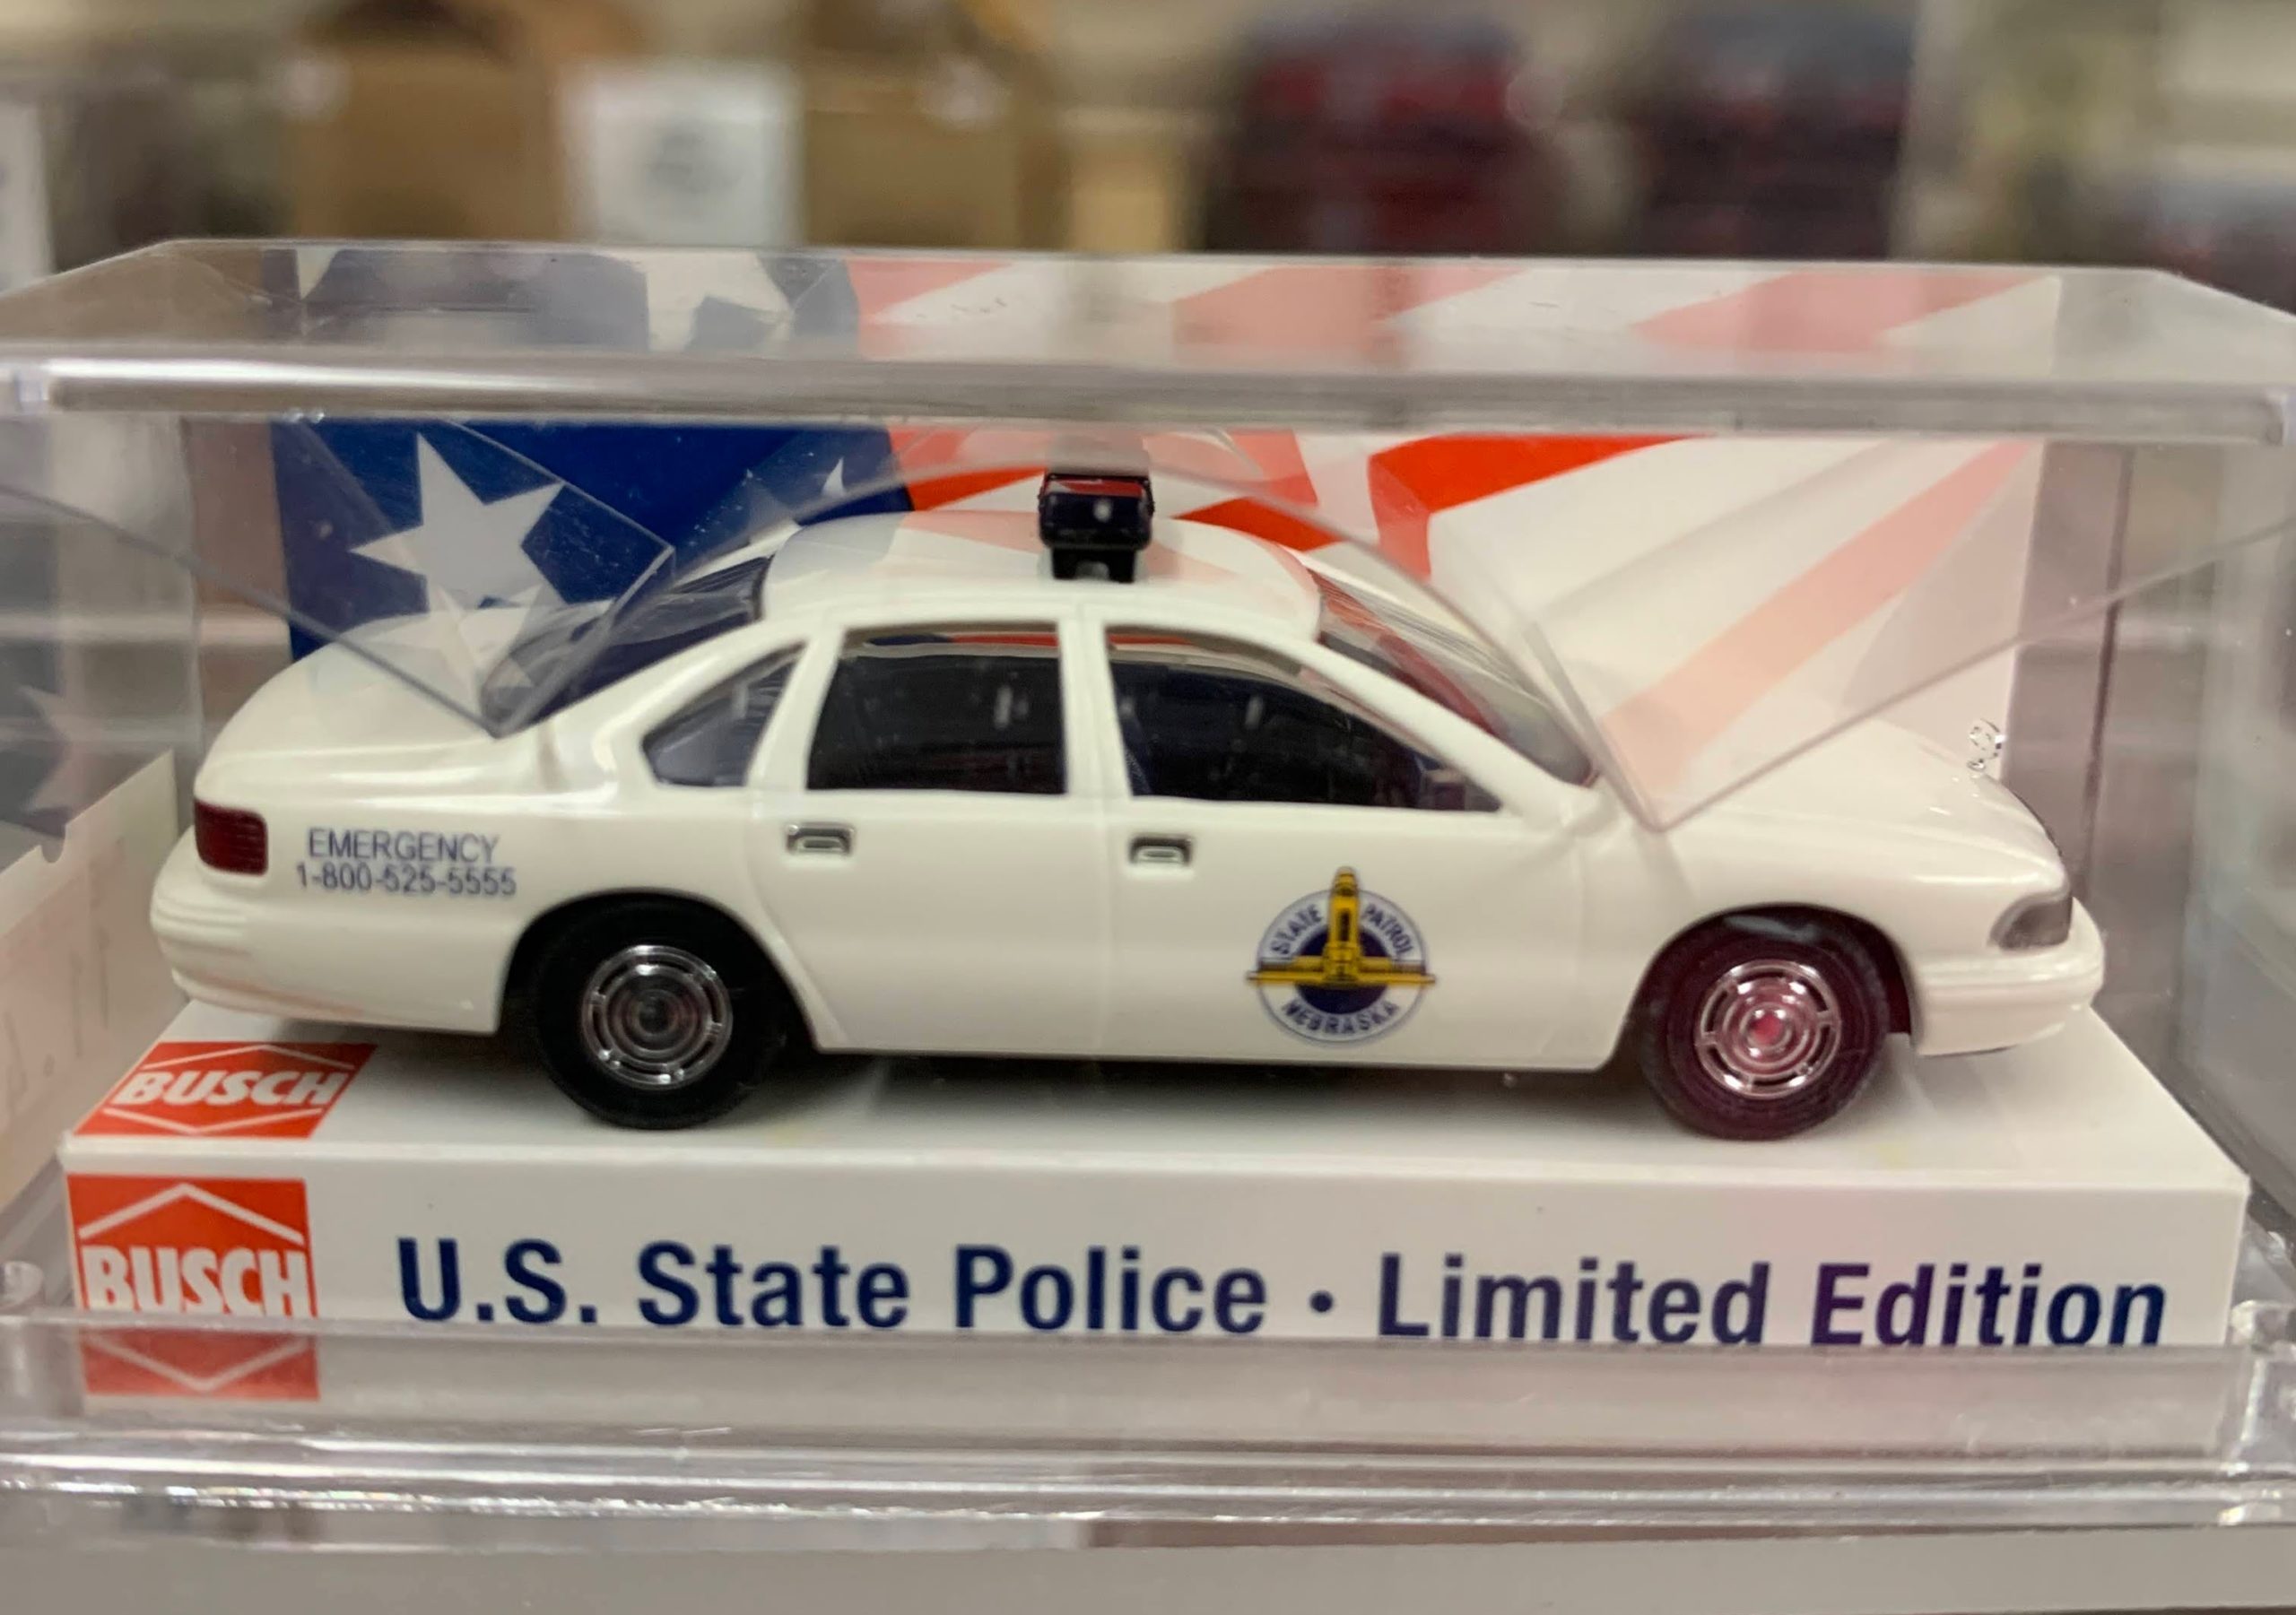 U.S. State Police Series - Nebraska